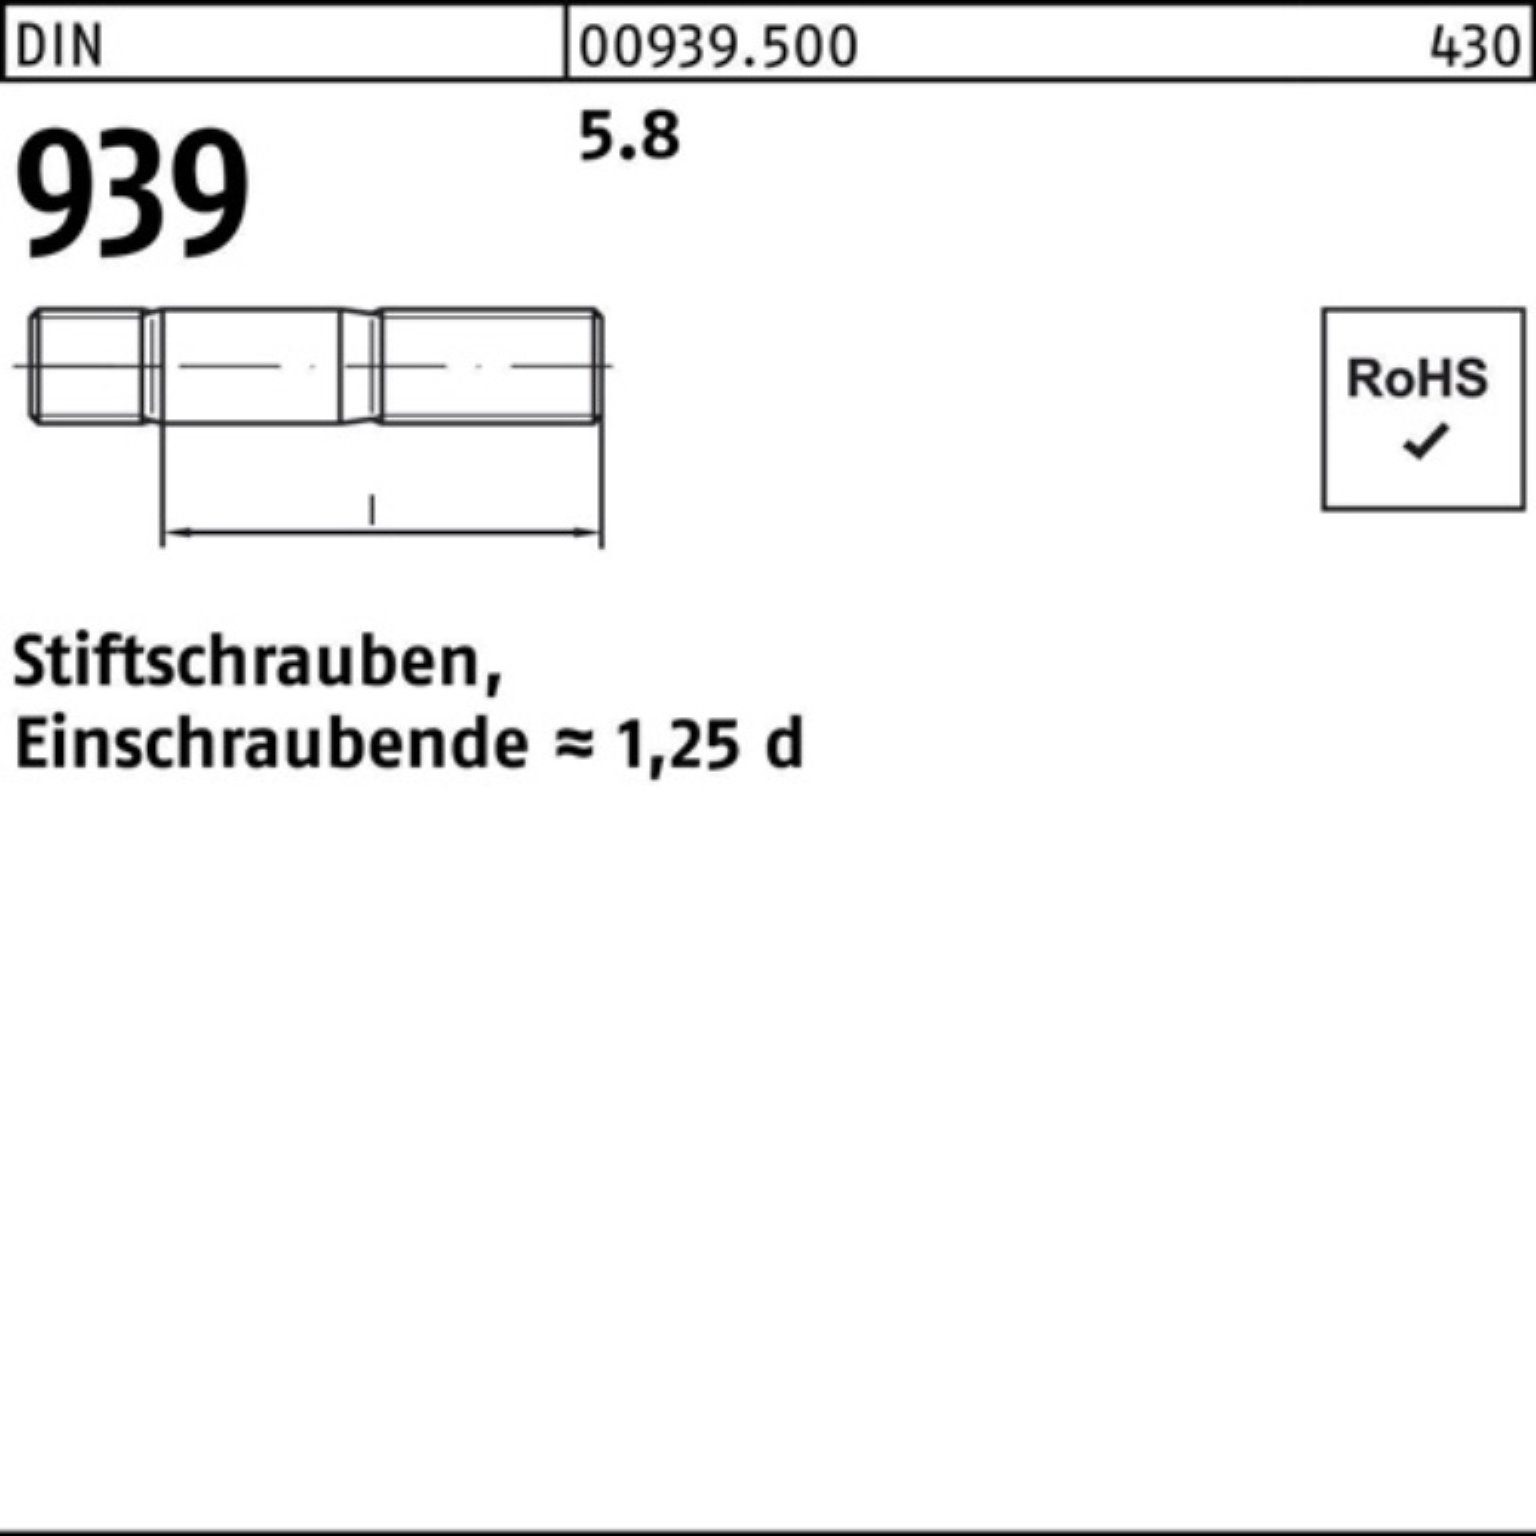 Reyher Stiftschraube 100er Pack M24x Einschraubende=1,25d DIN 110 5.8 10 Stiftschraube 939